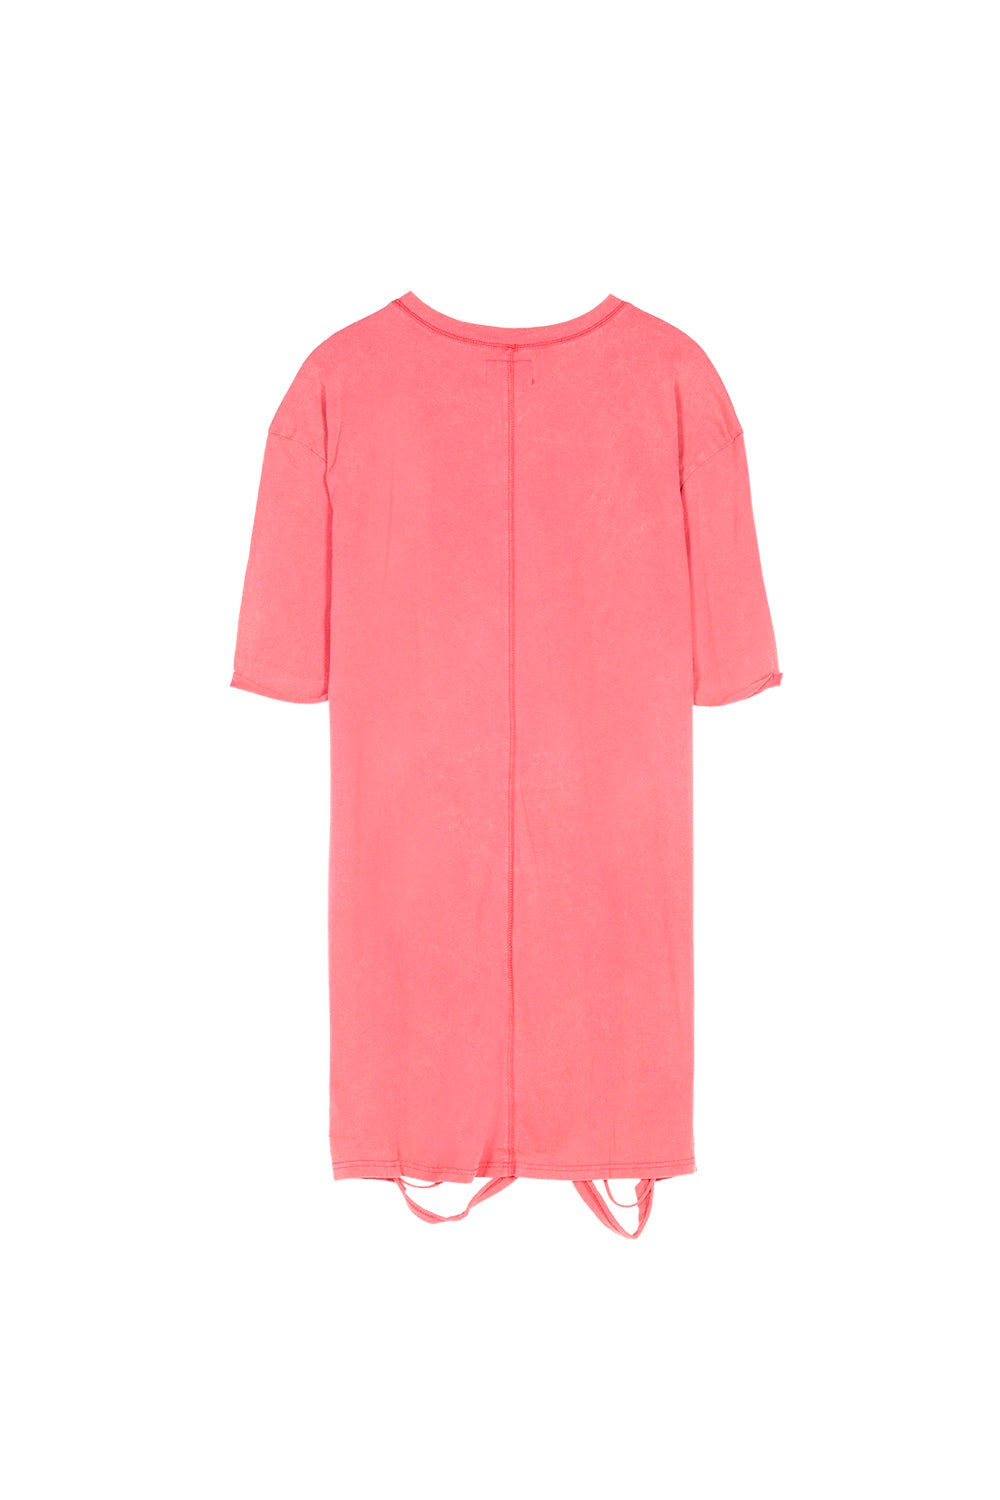 Sixth June - Robe t-shirt déchirée rose foncé